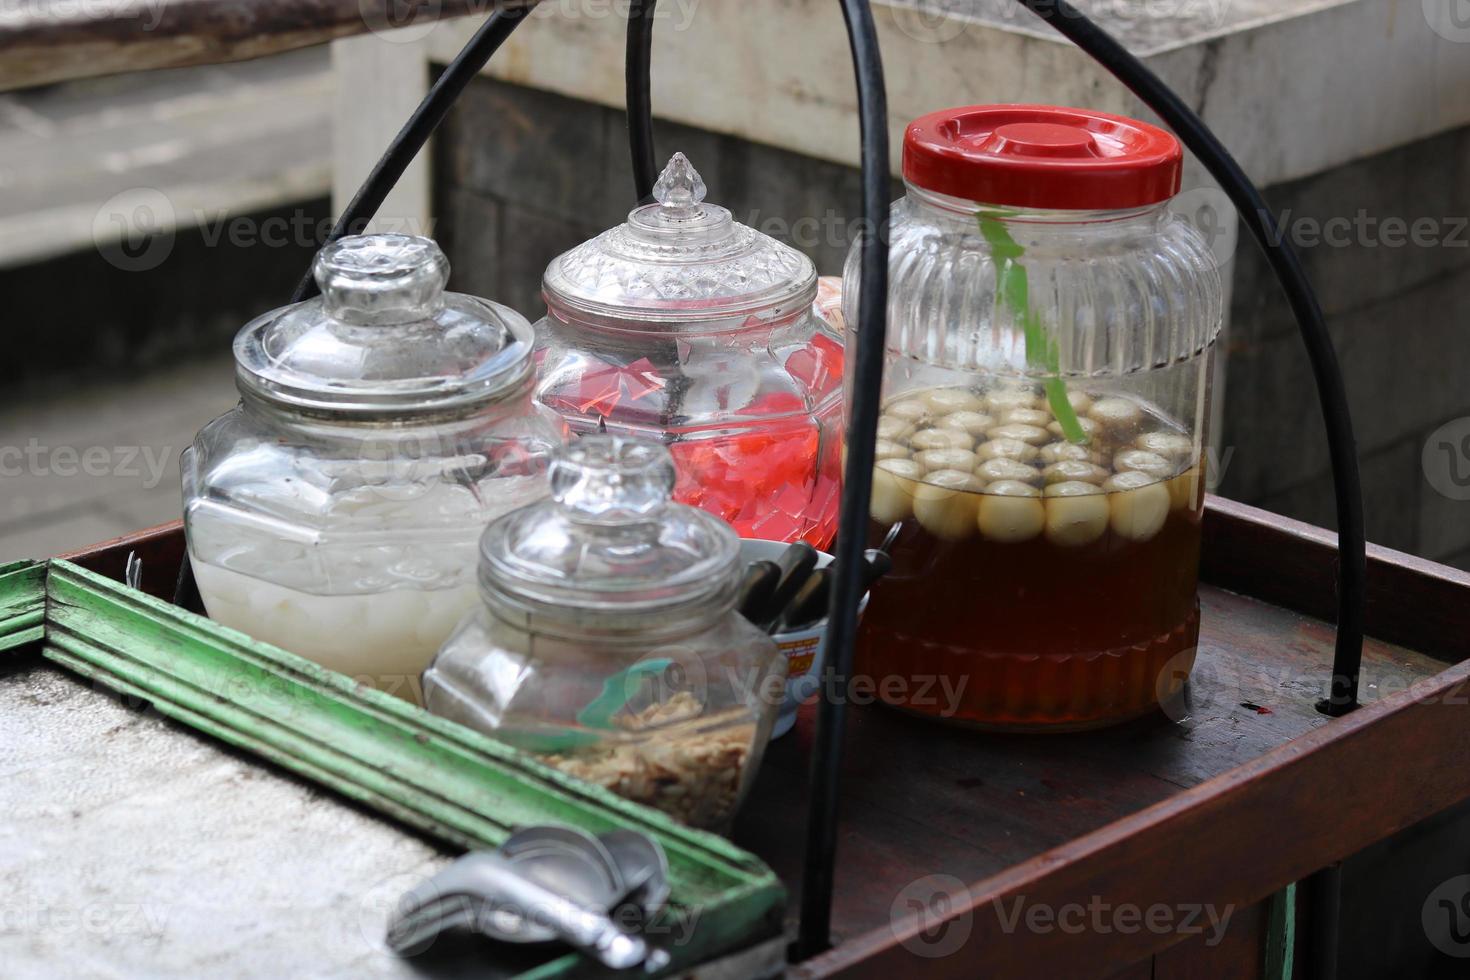 wedang ronde tangyuan, ein traditionelles getränk, das von den chinesen eingeführt und von den holländern benannt wurde, wird normalerweise mit einer tragestange verkauft. foto